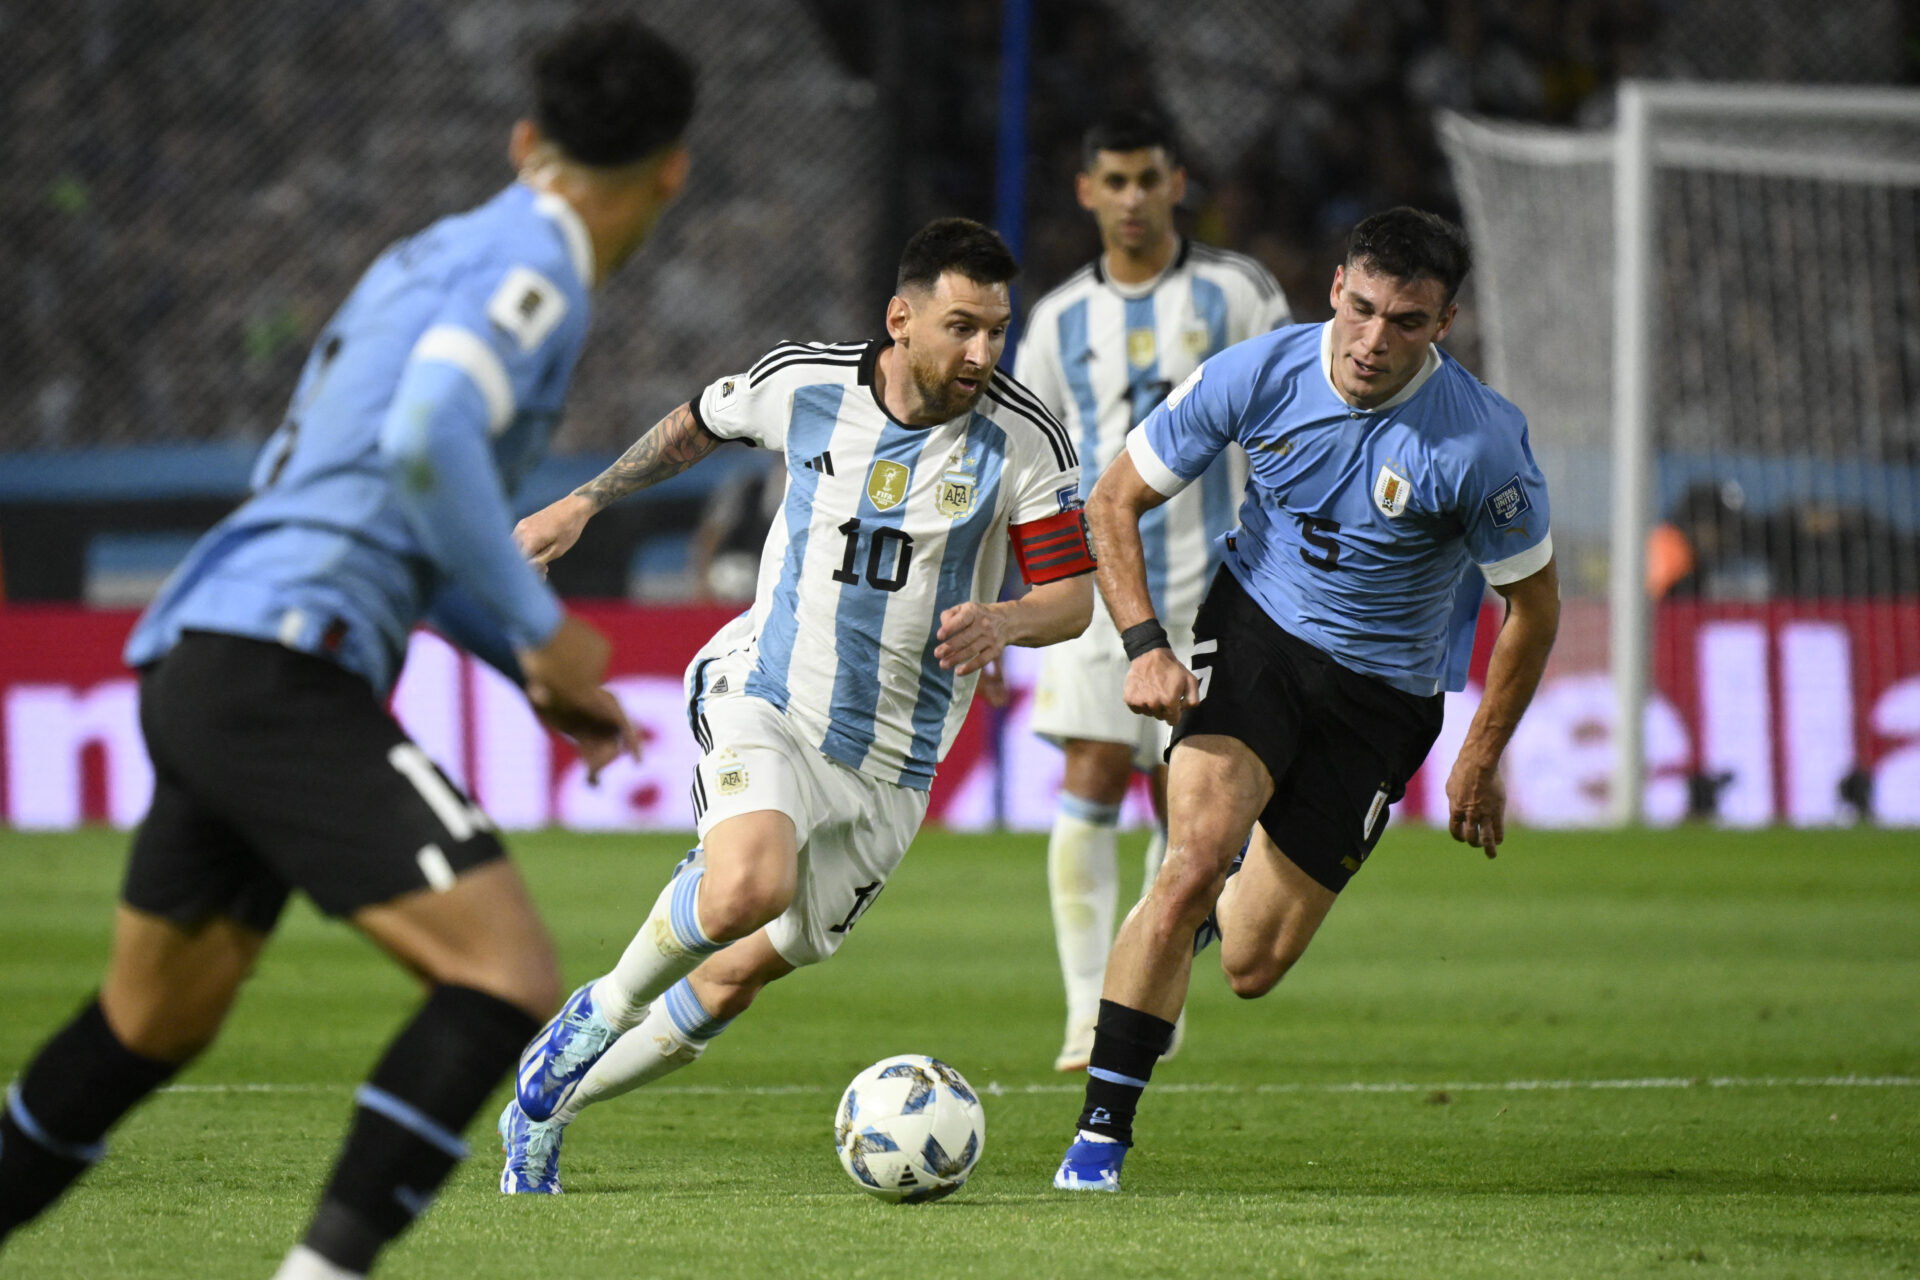 Argentina x Uruguai nas Eliminatórias da Copa do Mundo de 2026